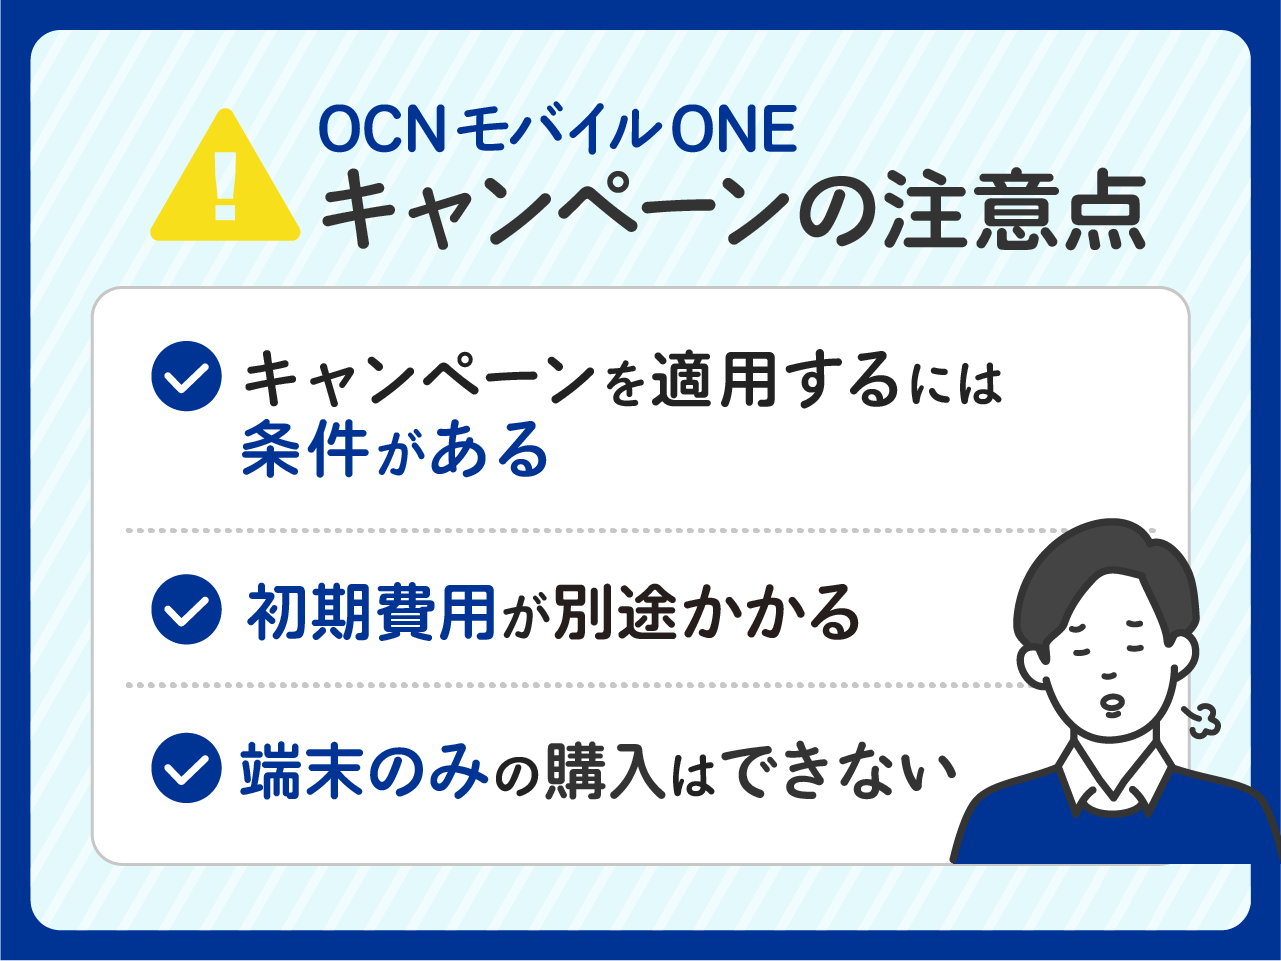 OCN モバイル ONEでキャンペーンを適用する注意点